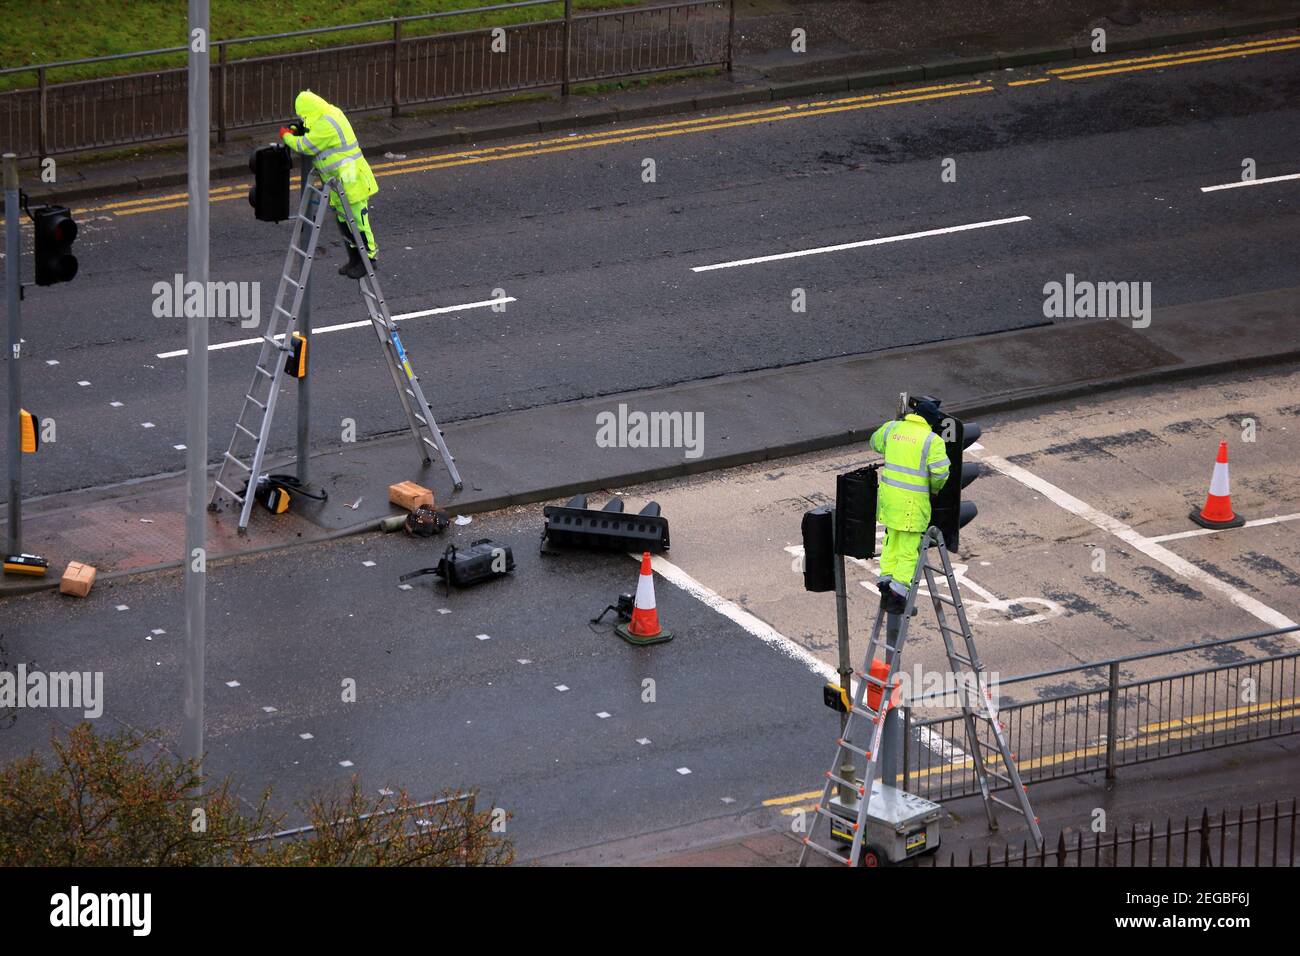 Des ouvriers grimpent les échelles et travaillent aux feux de signalisation lors d'une journée humide à Paisley, en Écosse Banque D'Images